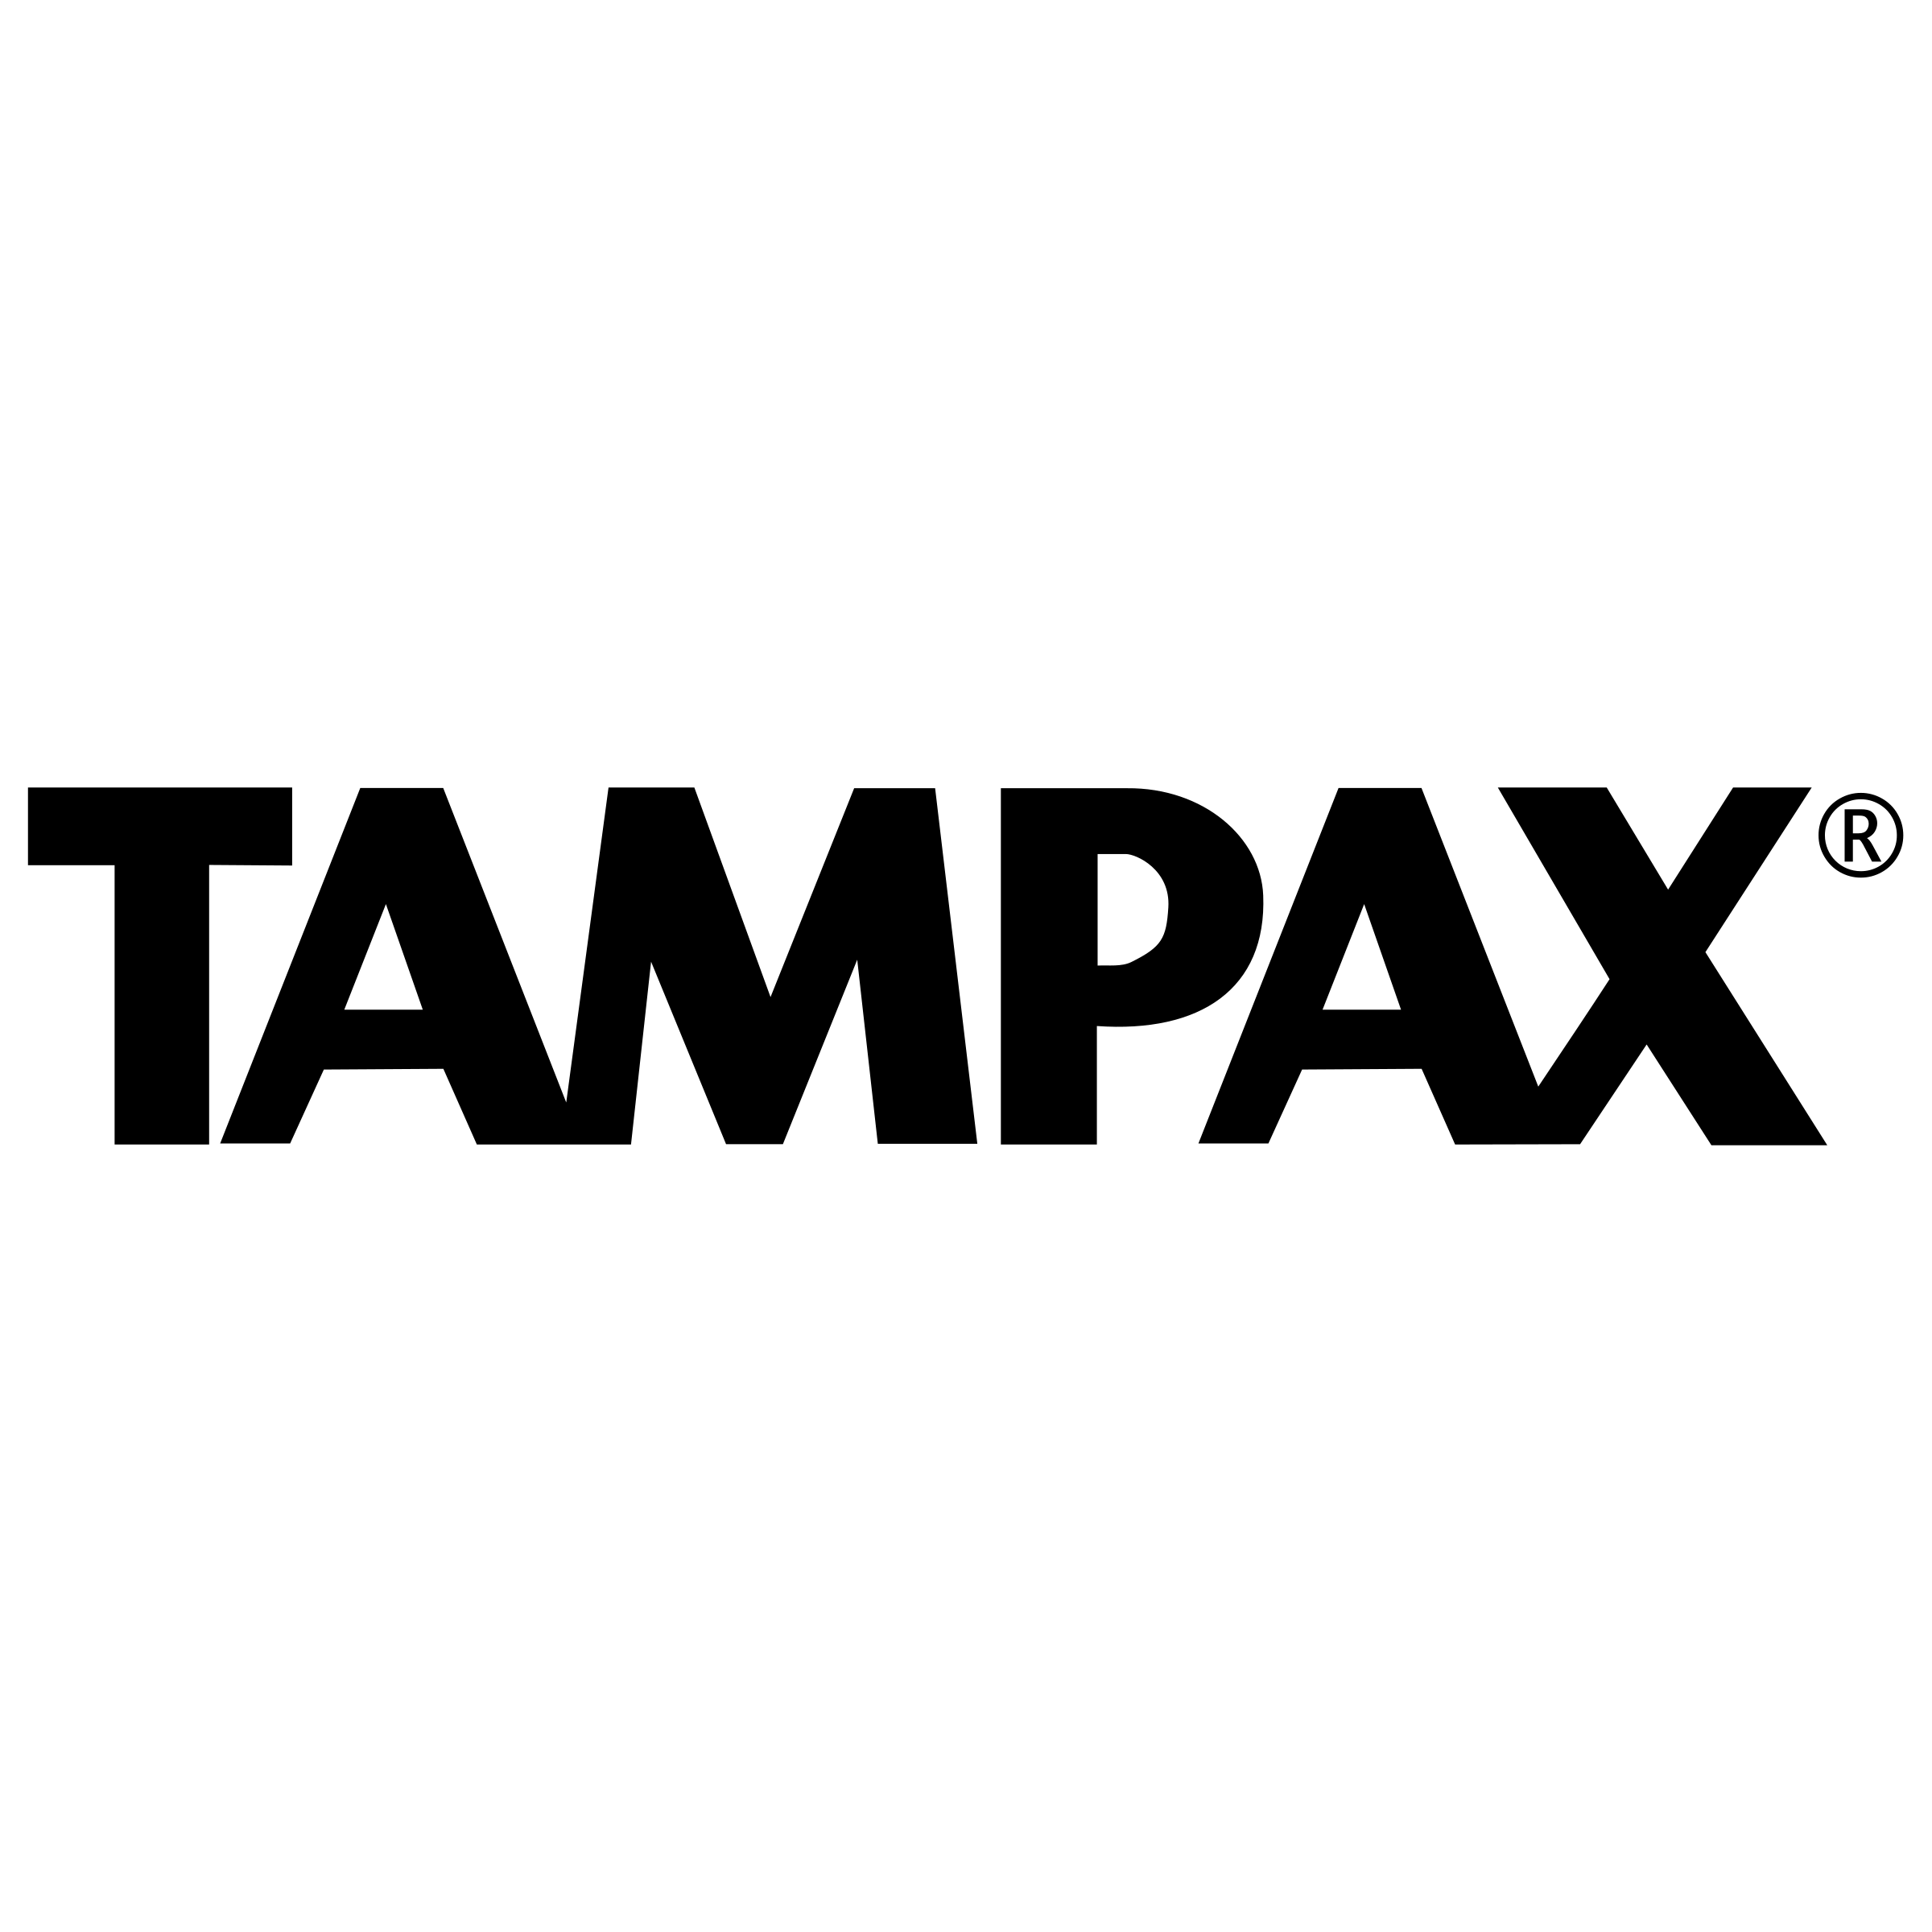 Tampax Logo - Tampax Logo PNG Transparent & SVG Vector